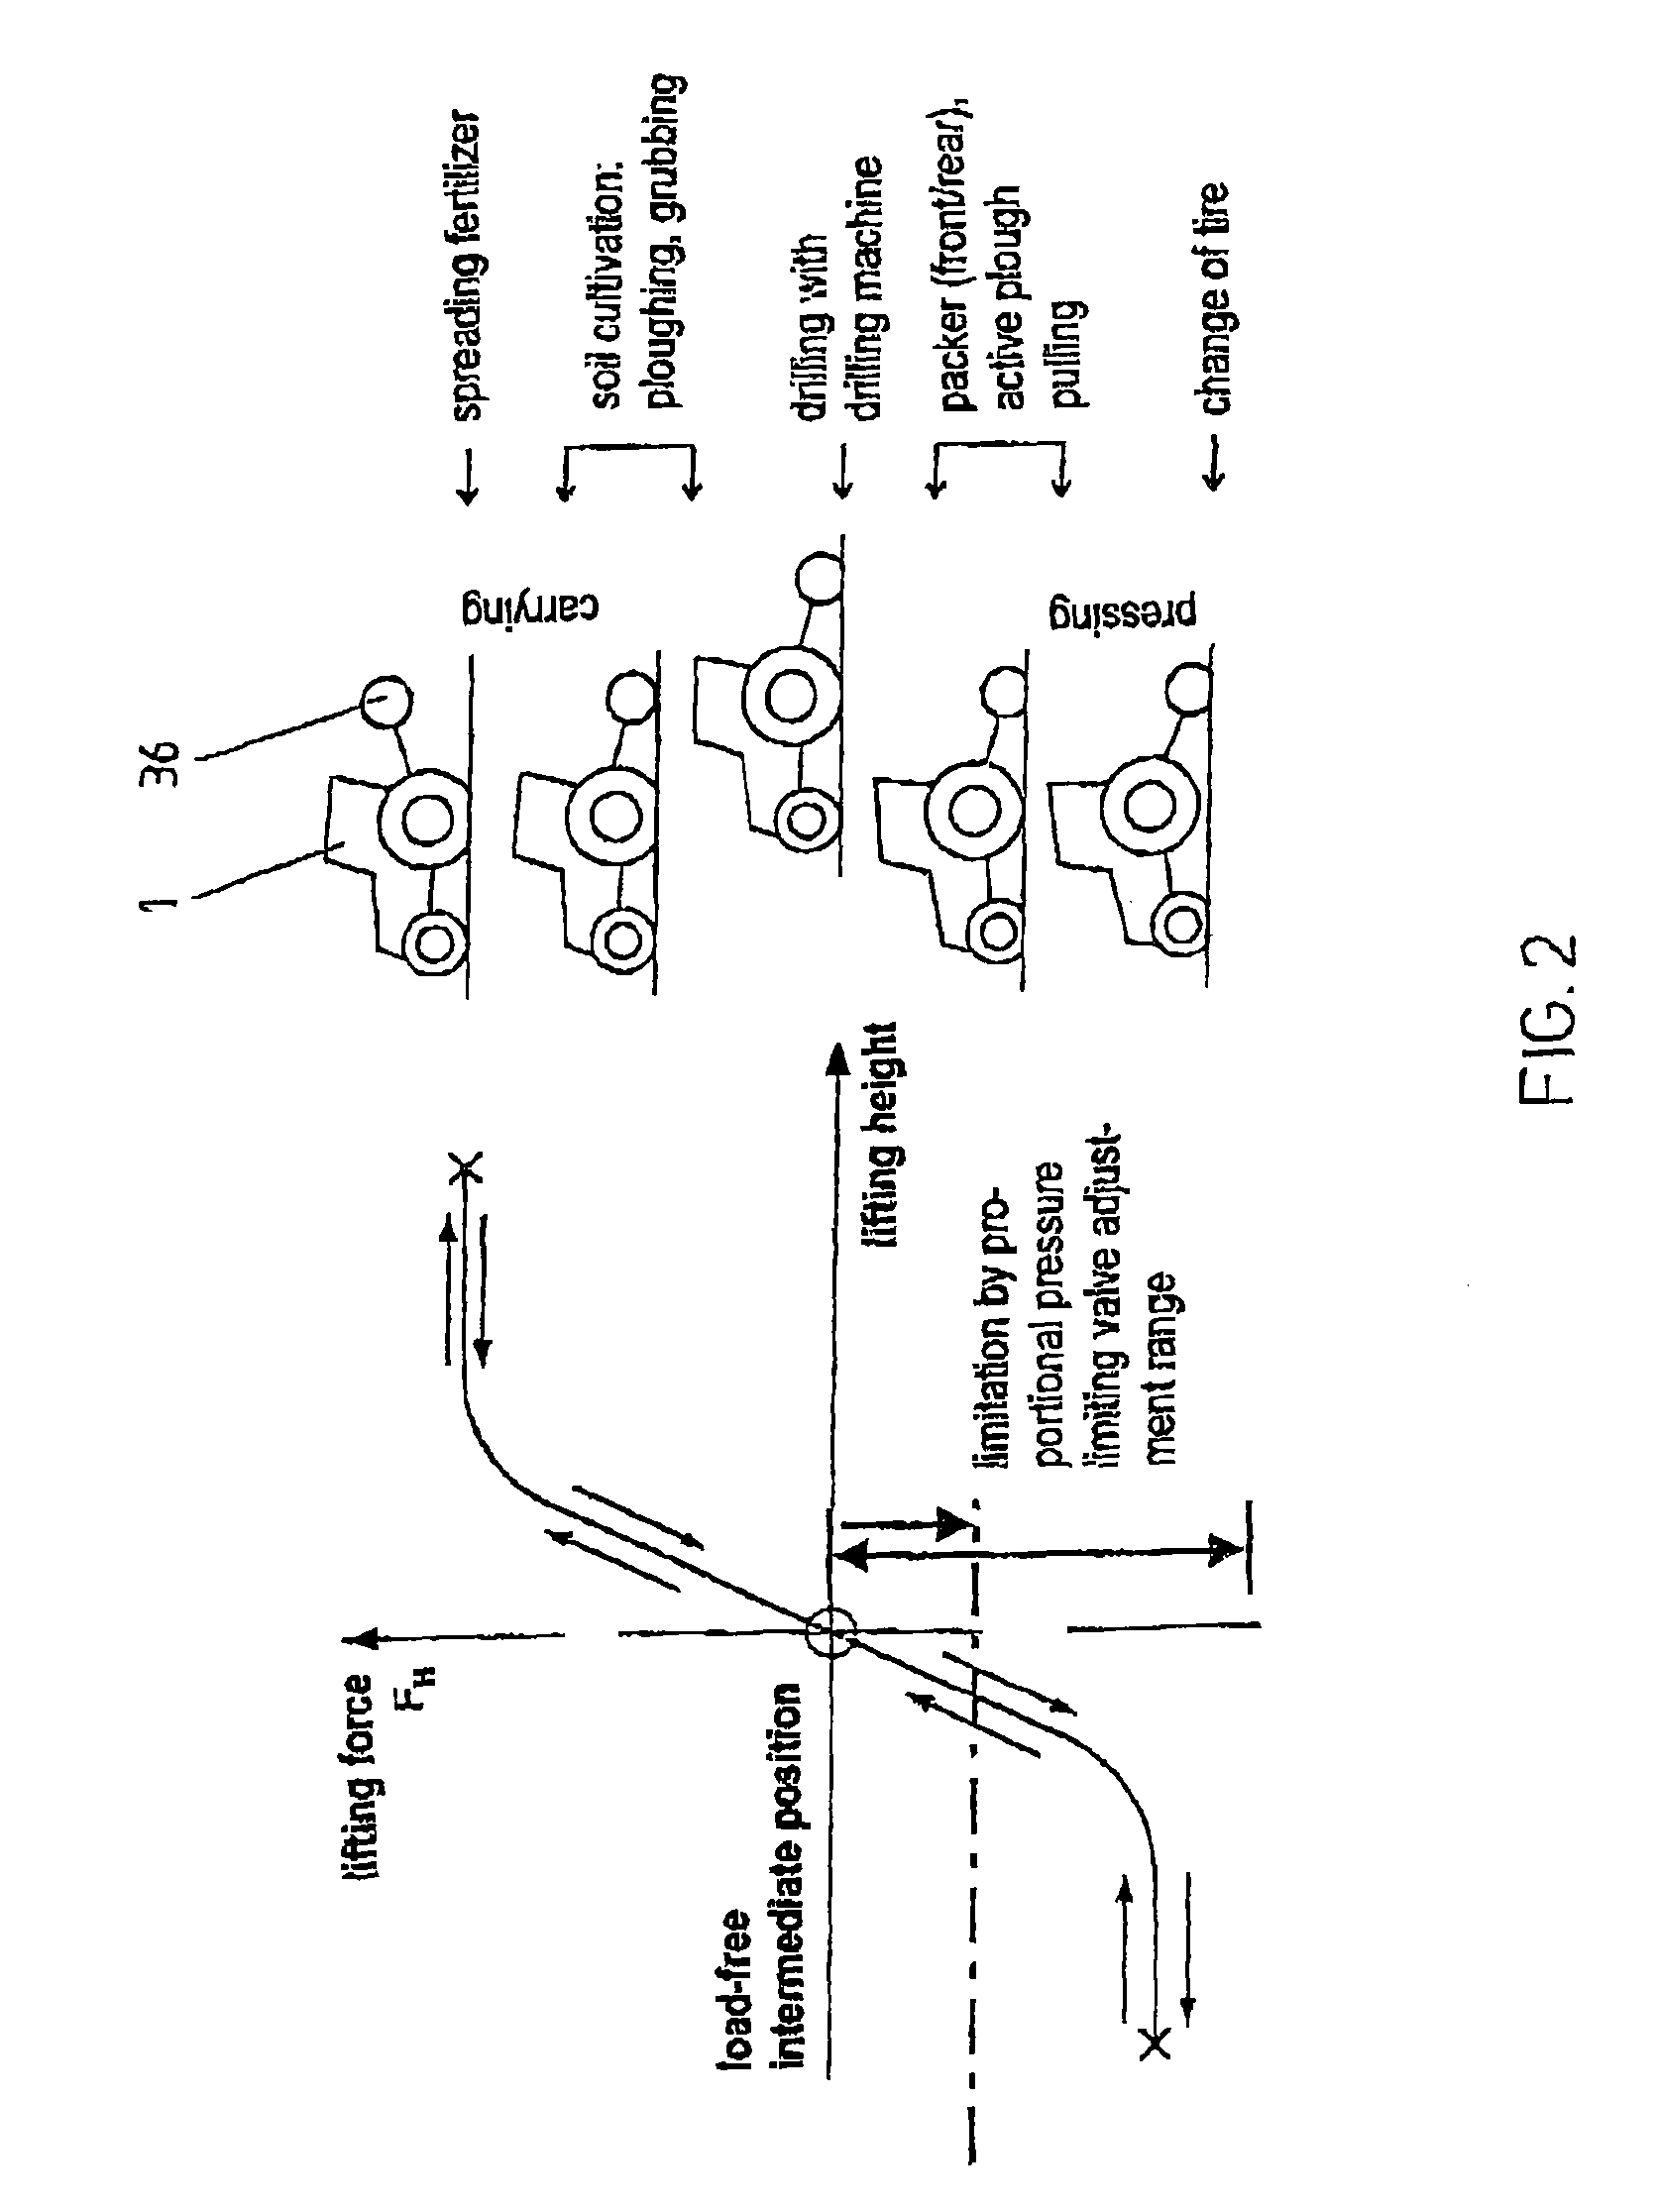 Lifting gear valve arrangement